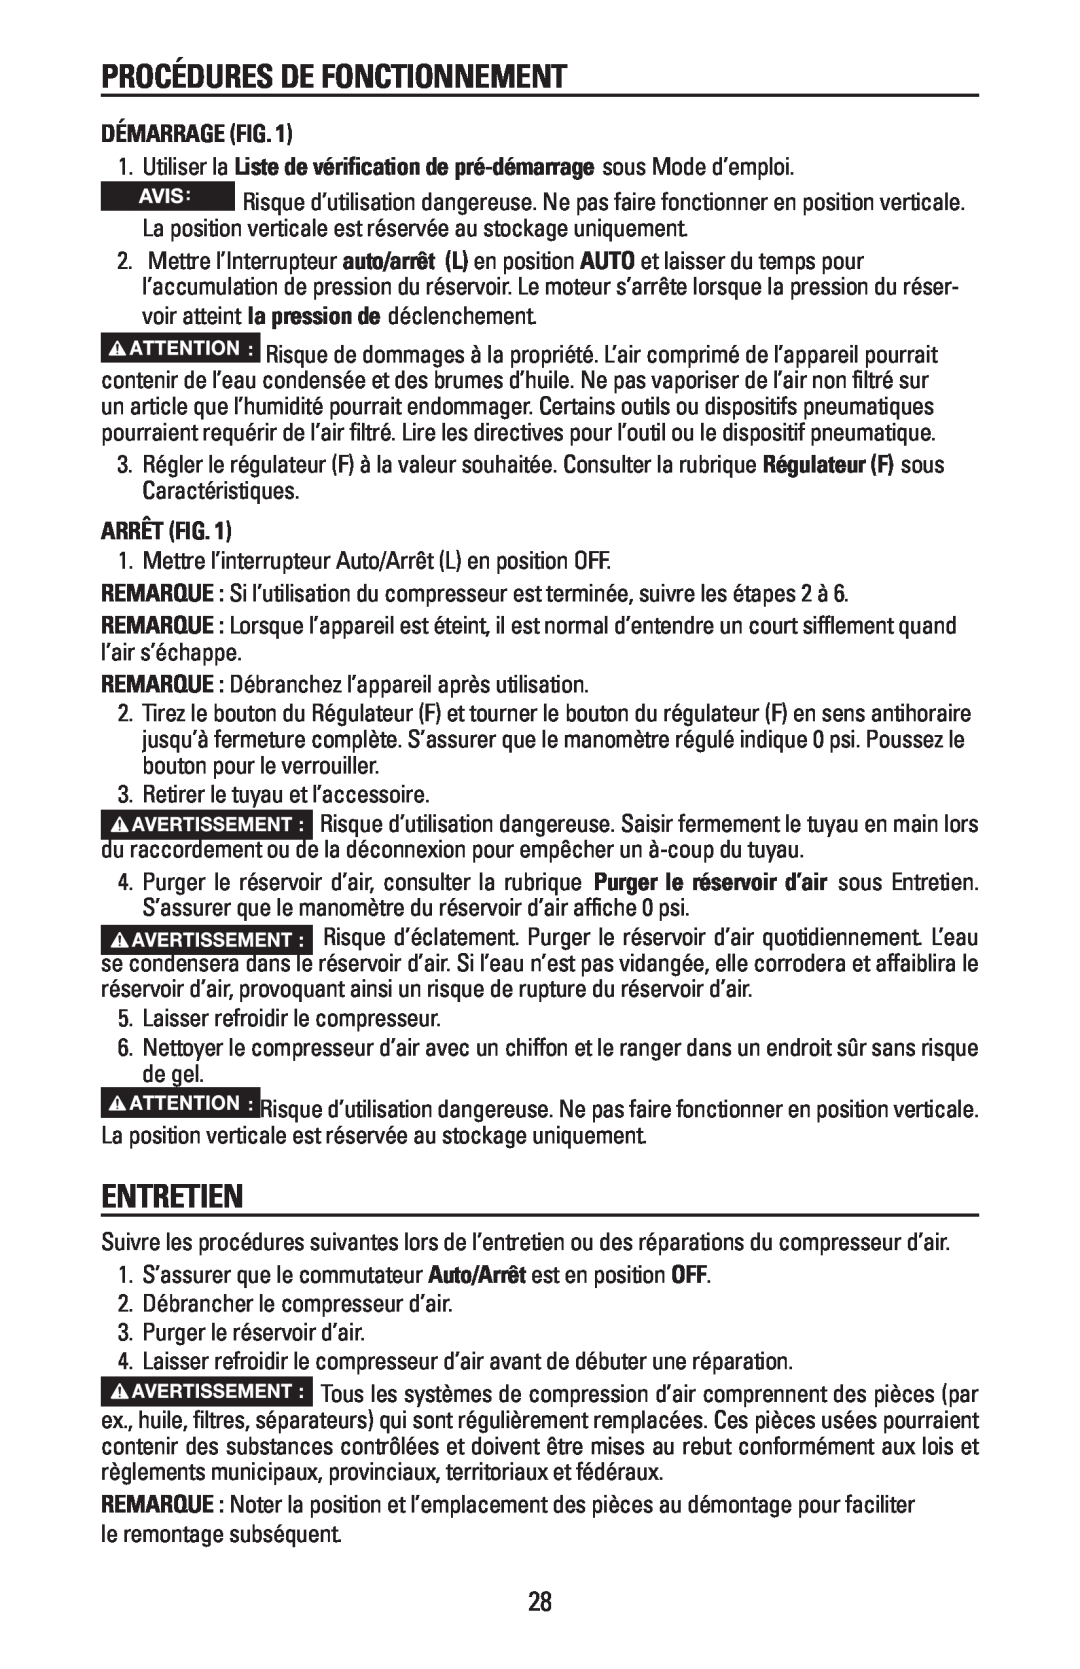 Bostitch CAP1645-OF owner manual Procédures De Fonctionnement, Entretien, Démarrage Fig, Arrêt Fig 